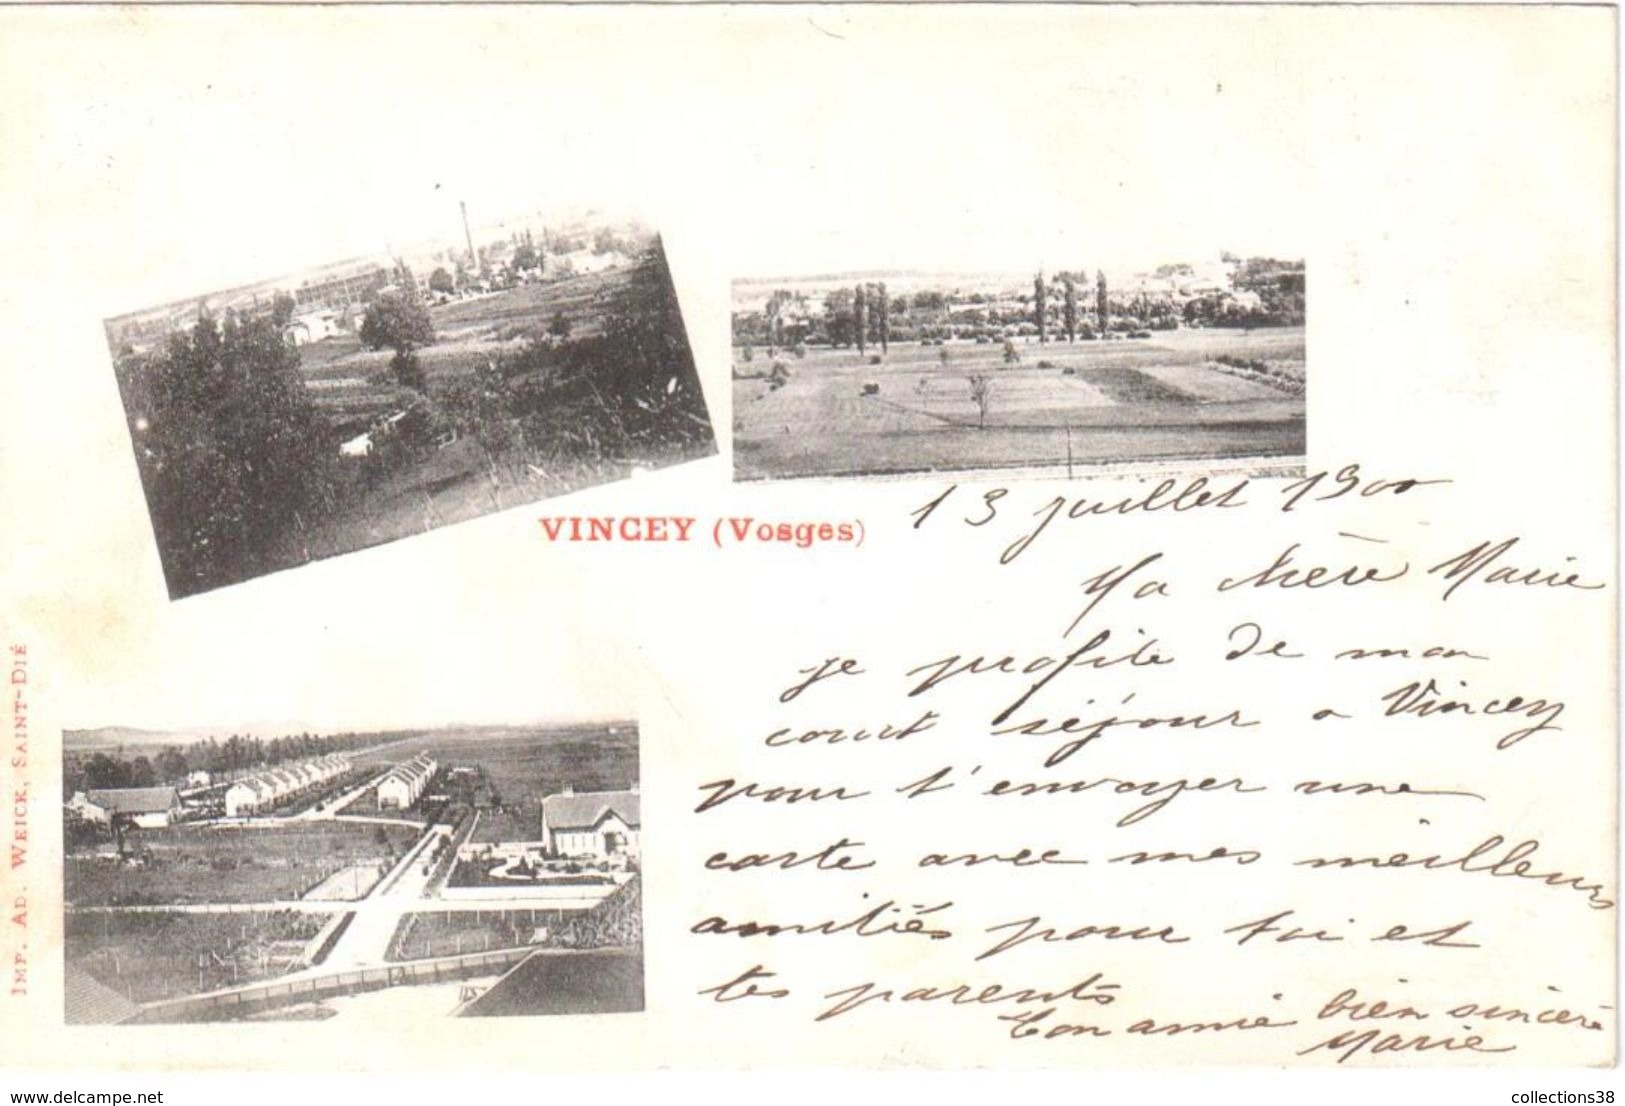 Vincey (Vosges) - Vincey